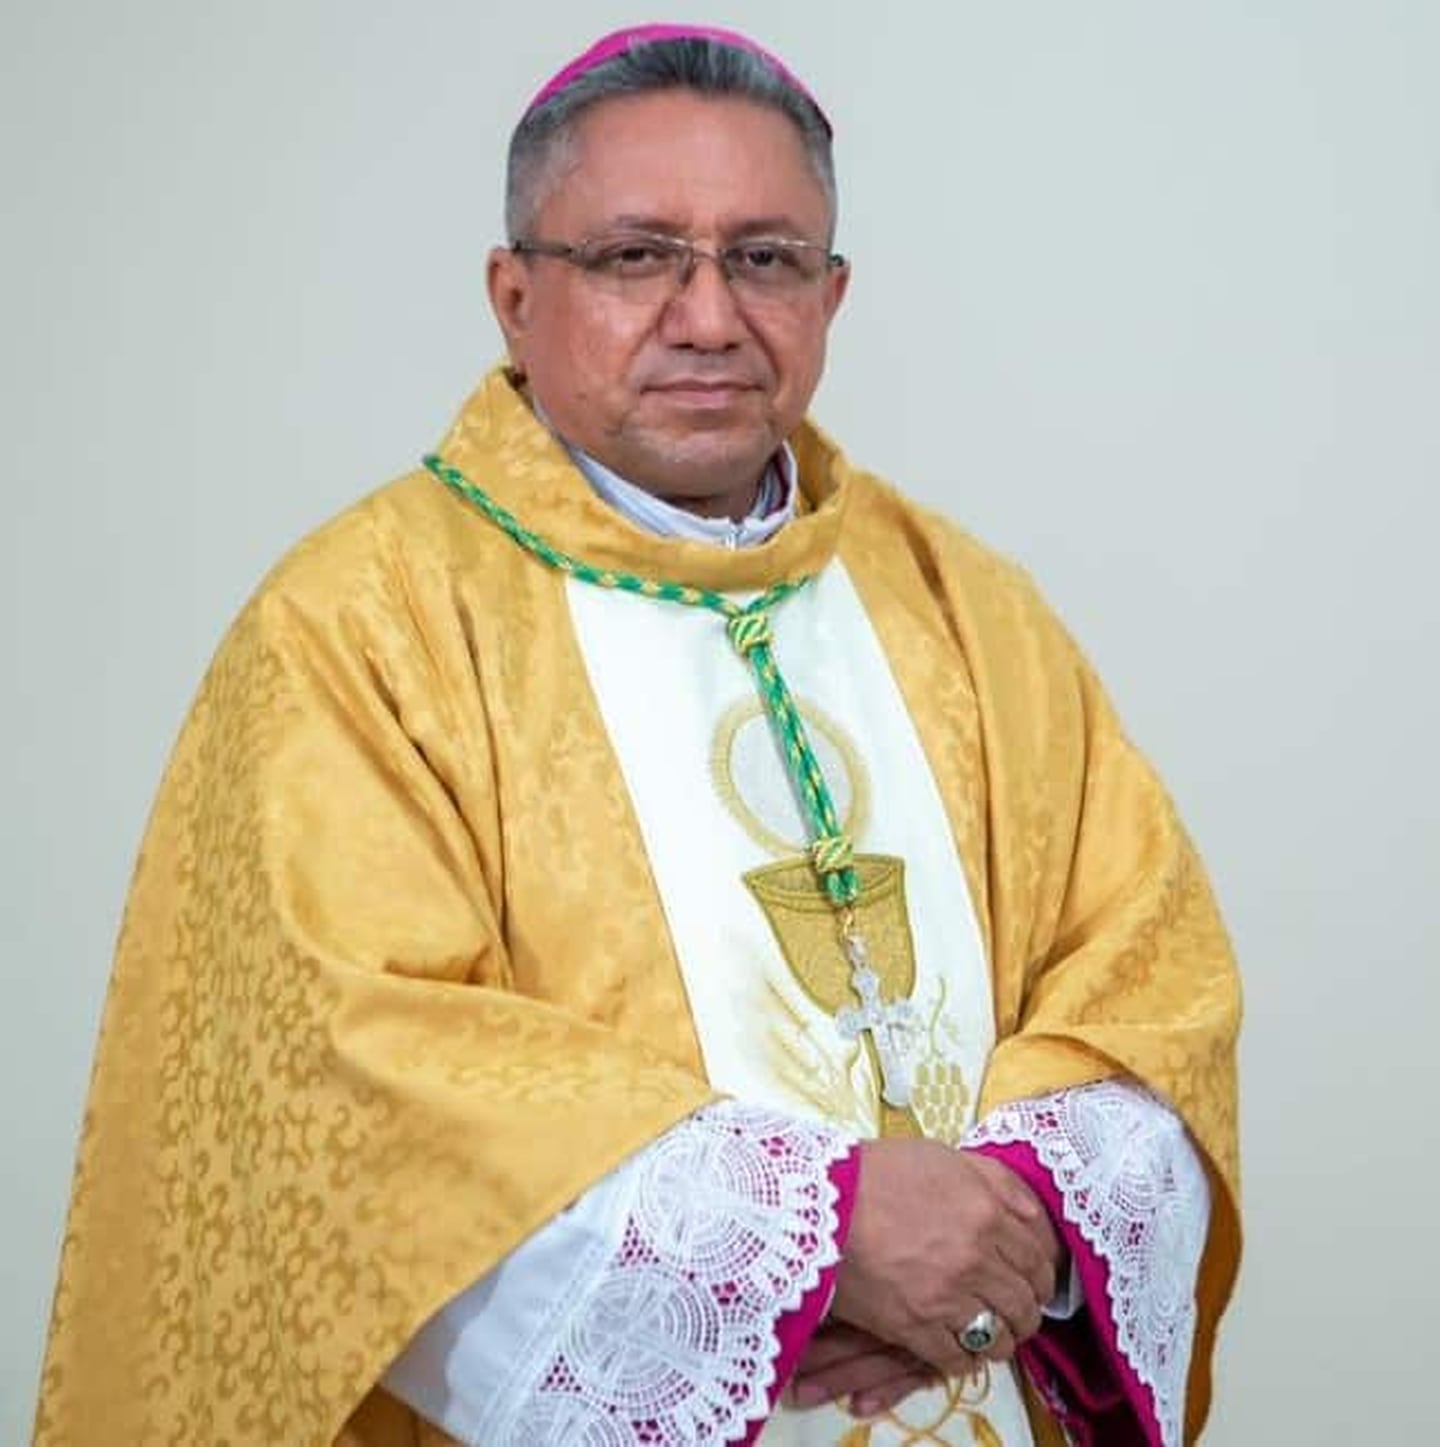 Isidro Mora, de 53 años, era vicario general en Matagalpa antes de ser nombrado obispo de Siuna en abril de 2021.